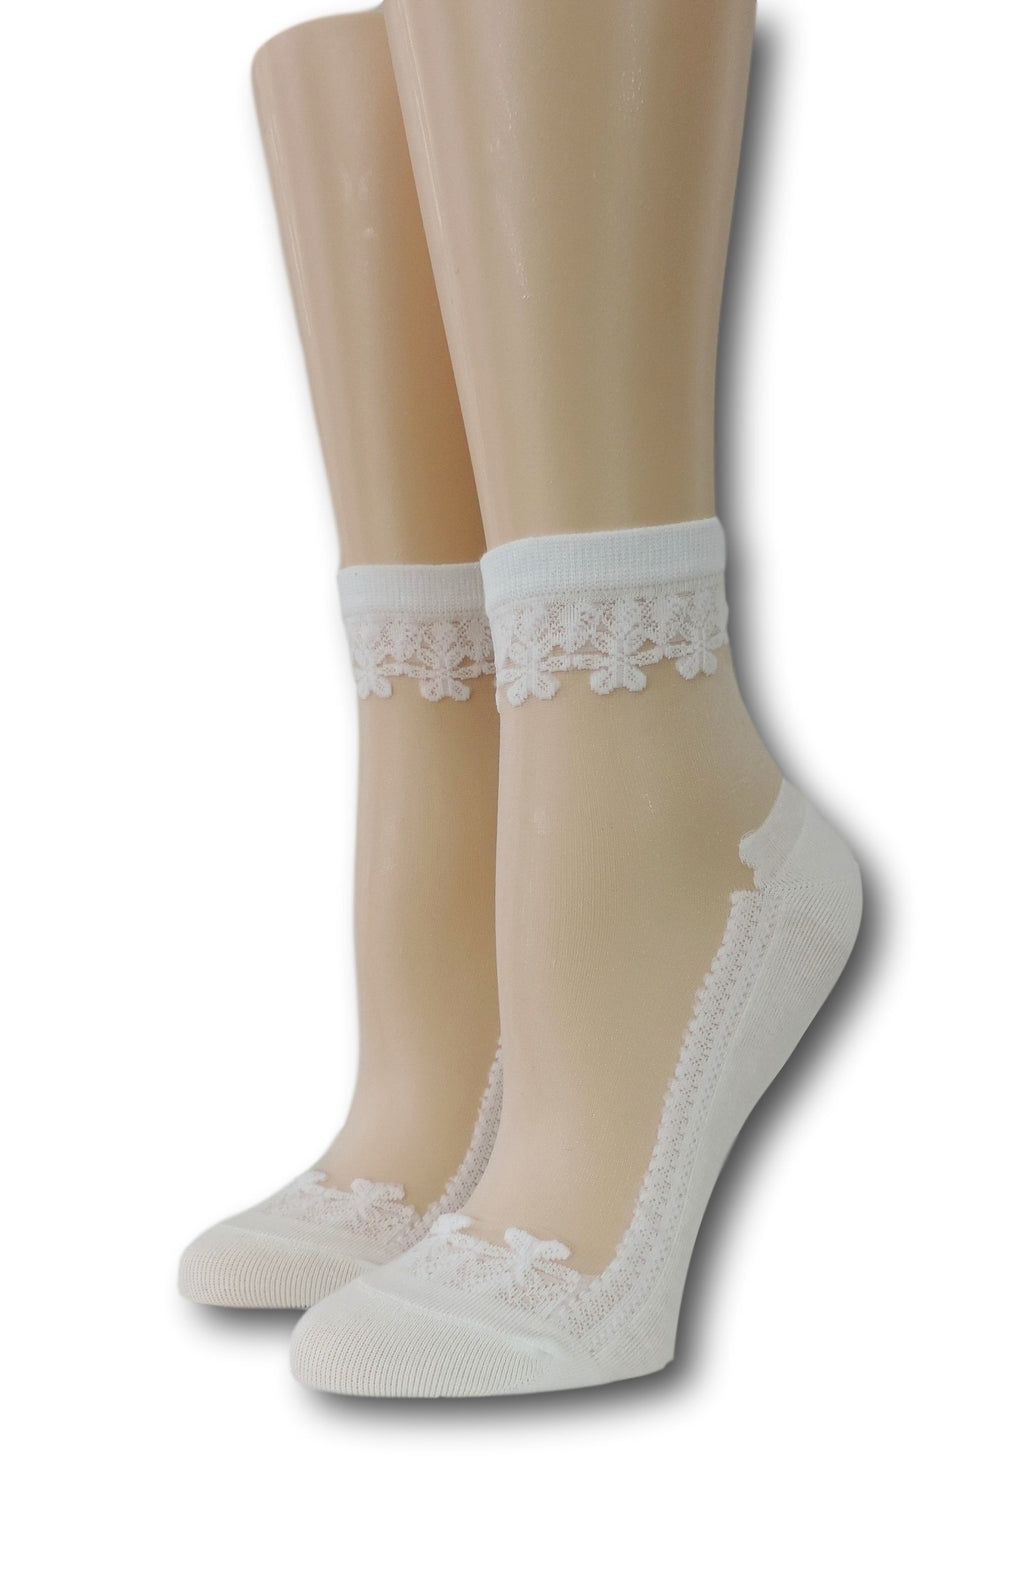 White Elegant Sheer Socks